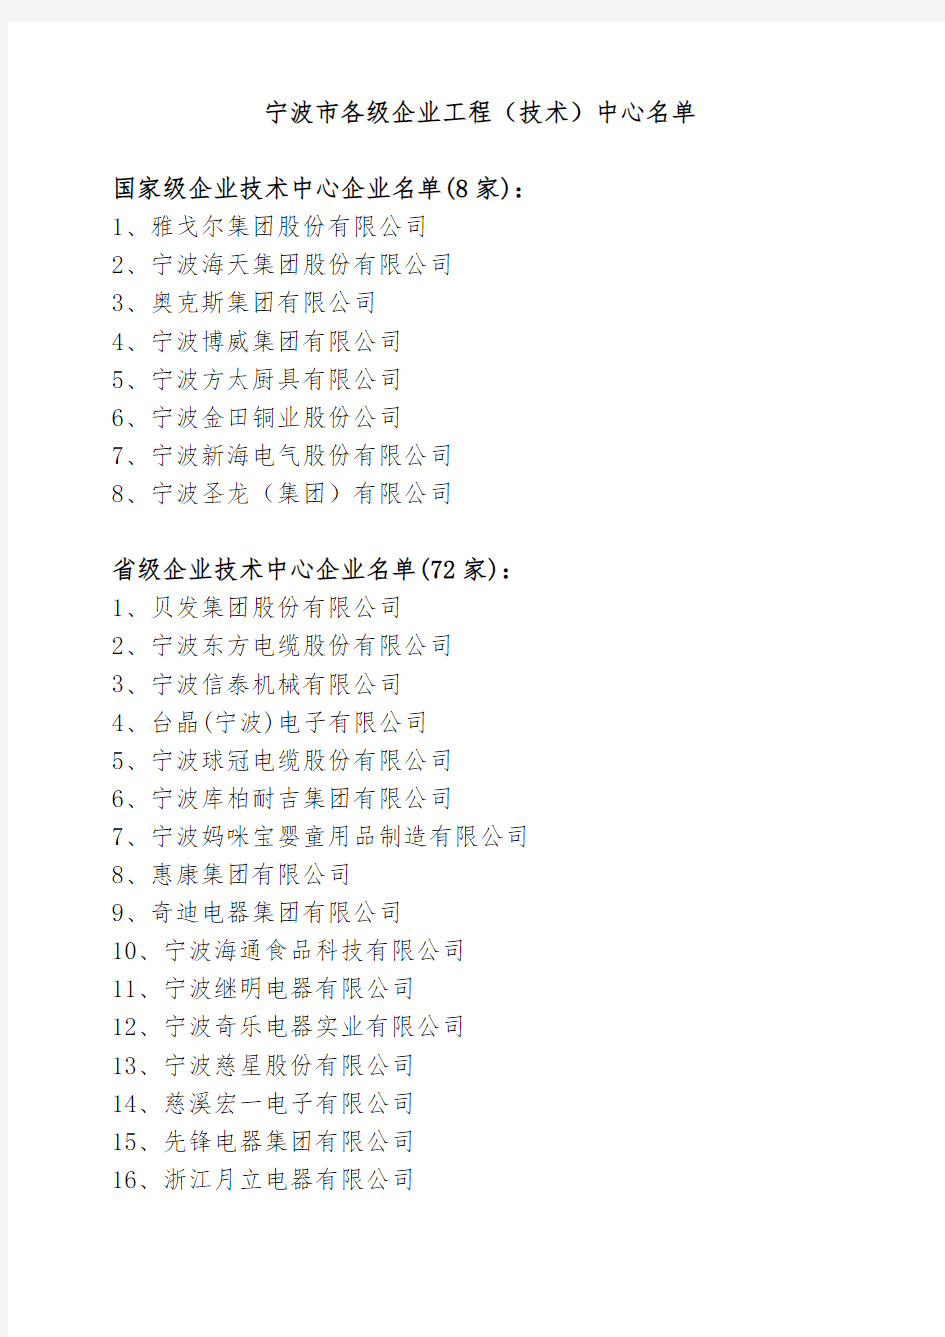 宁波市各级企业工程(技术)中心名单